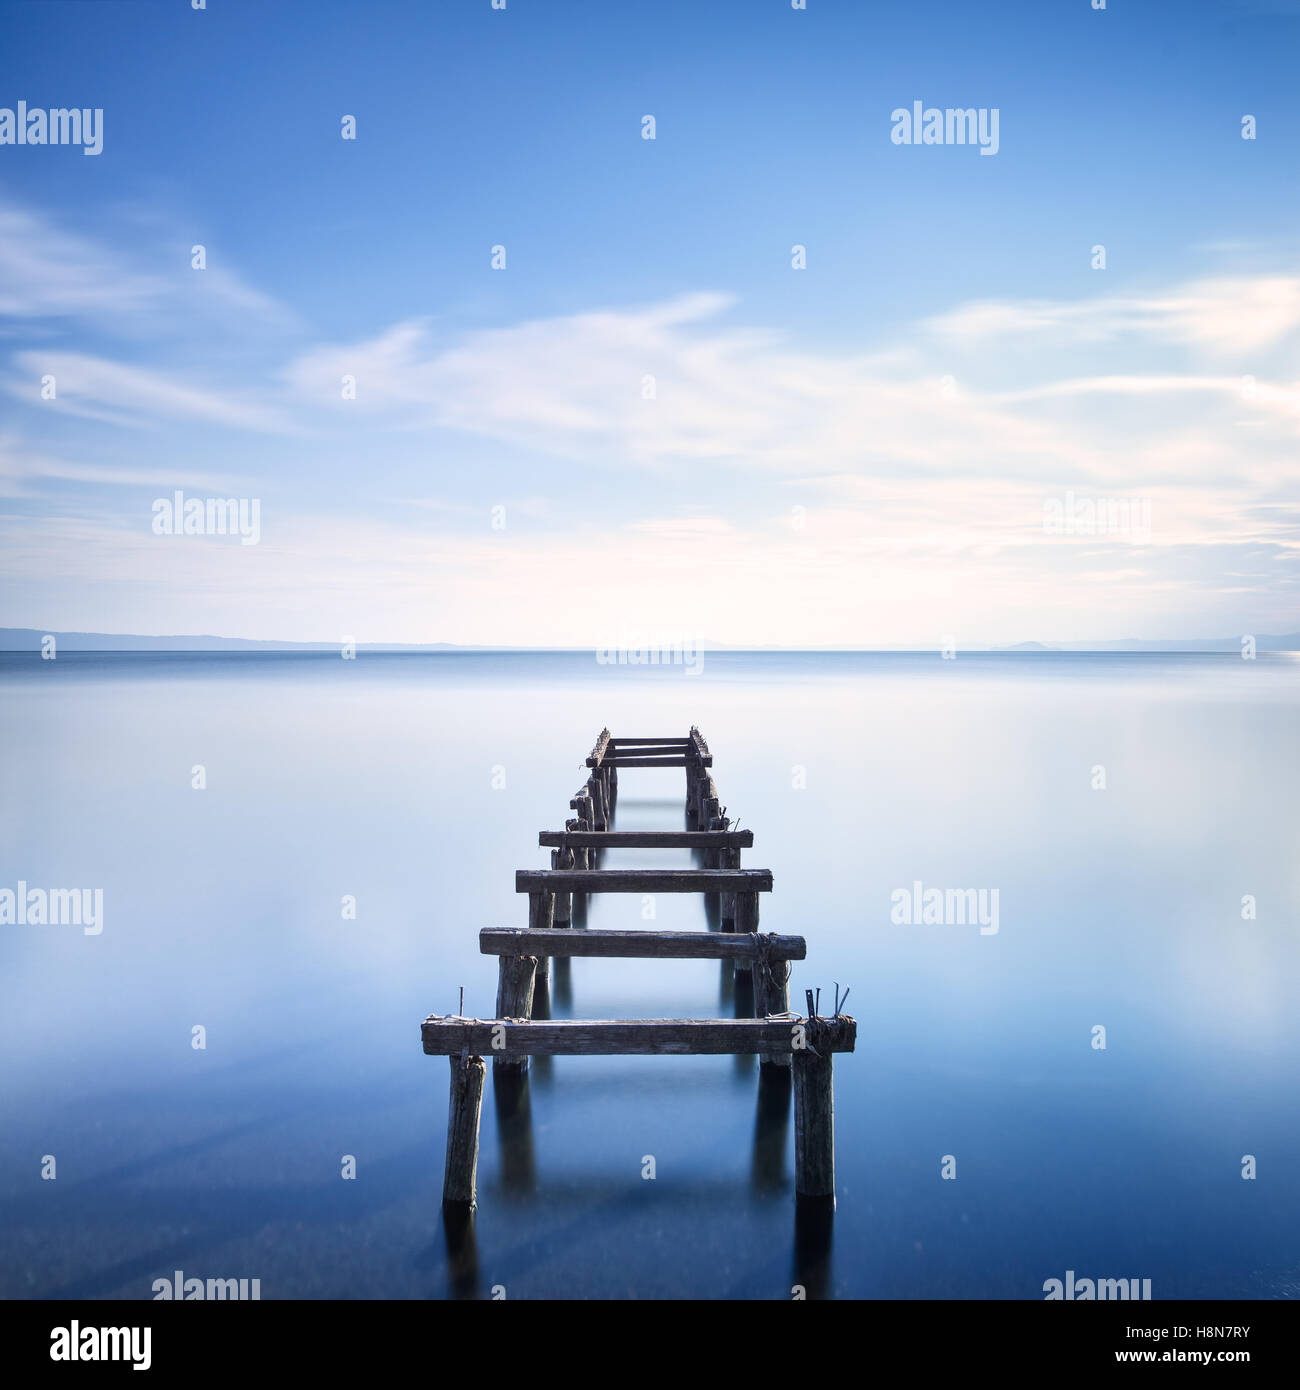 Il molo di legno o molo rimane su un lago blu del tramonto. Fotografie con lunghi tempi di esposizione Foto Stock